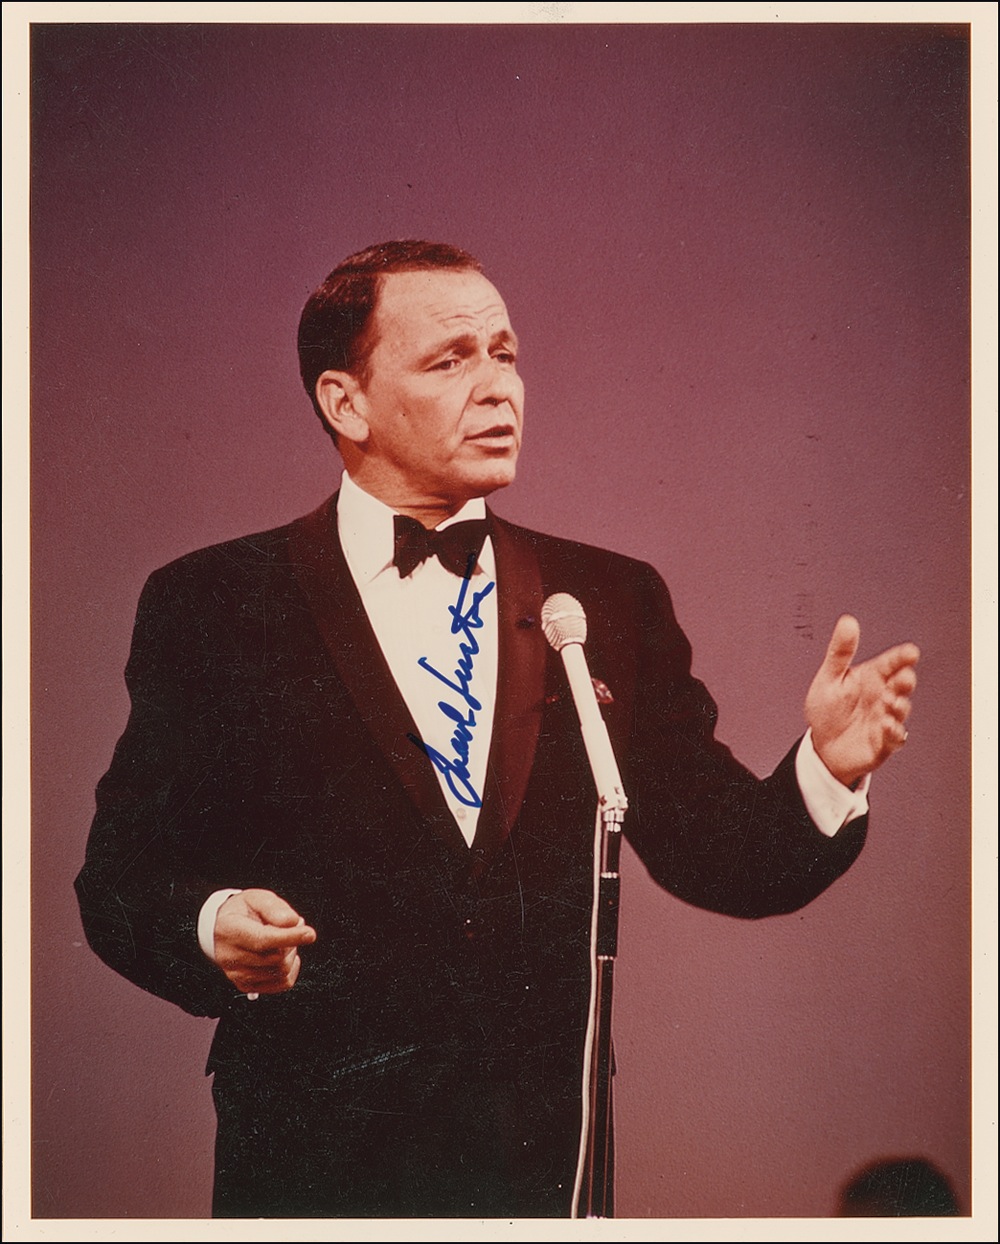 Lot #879 Frank Sinatra